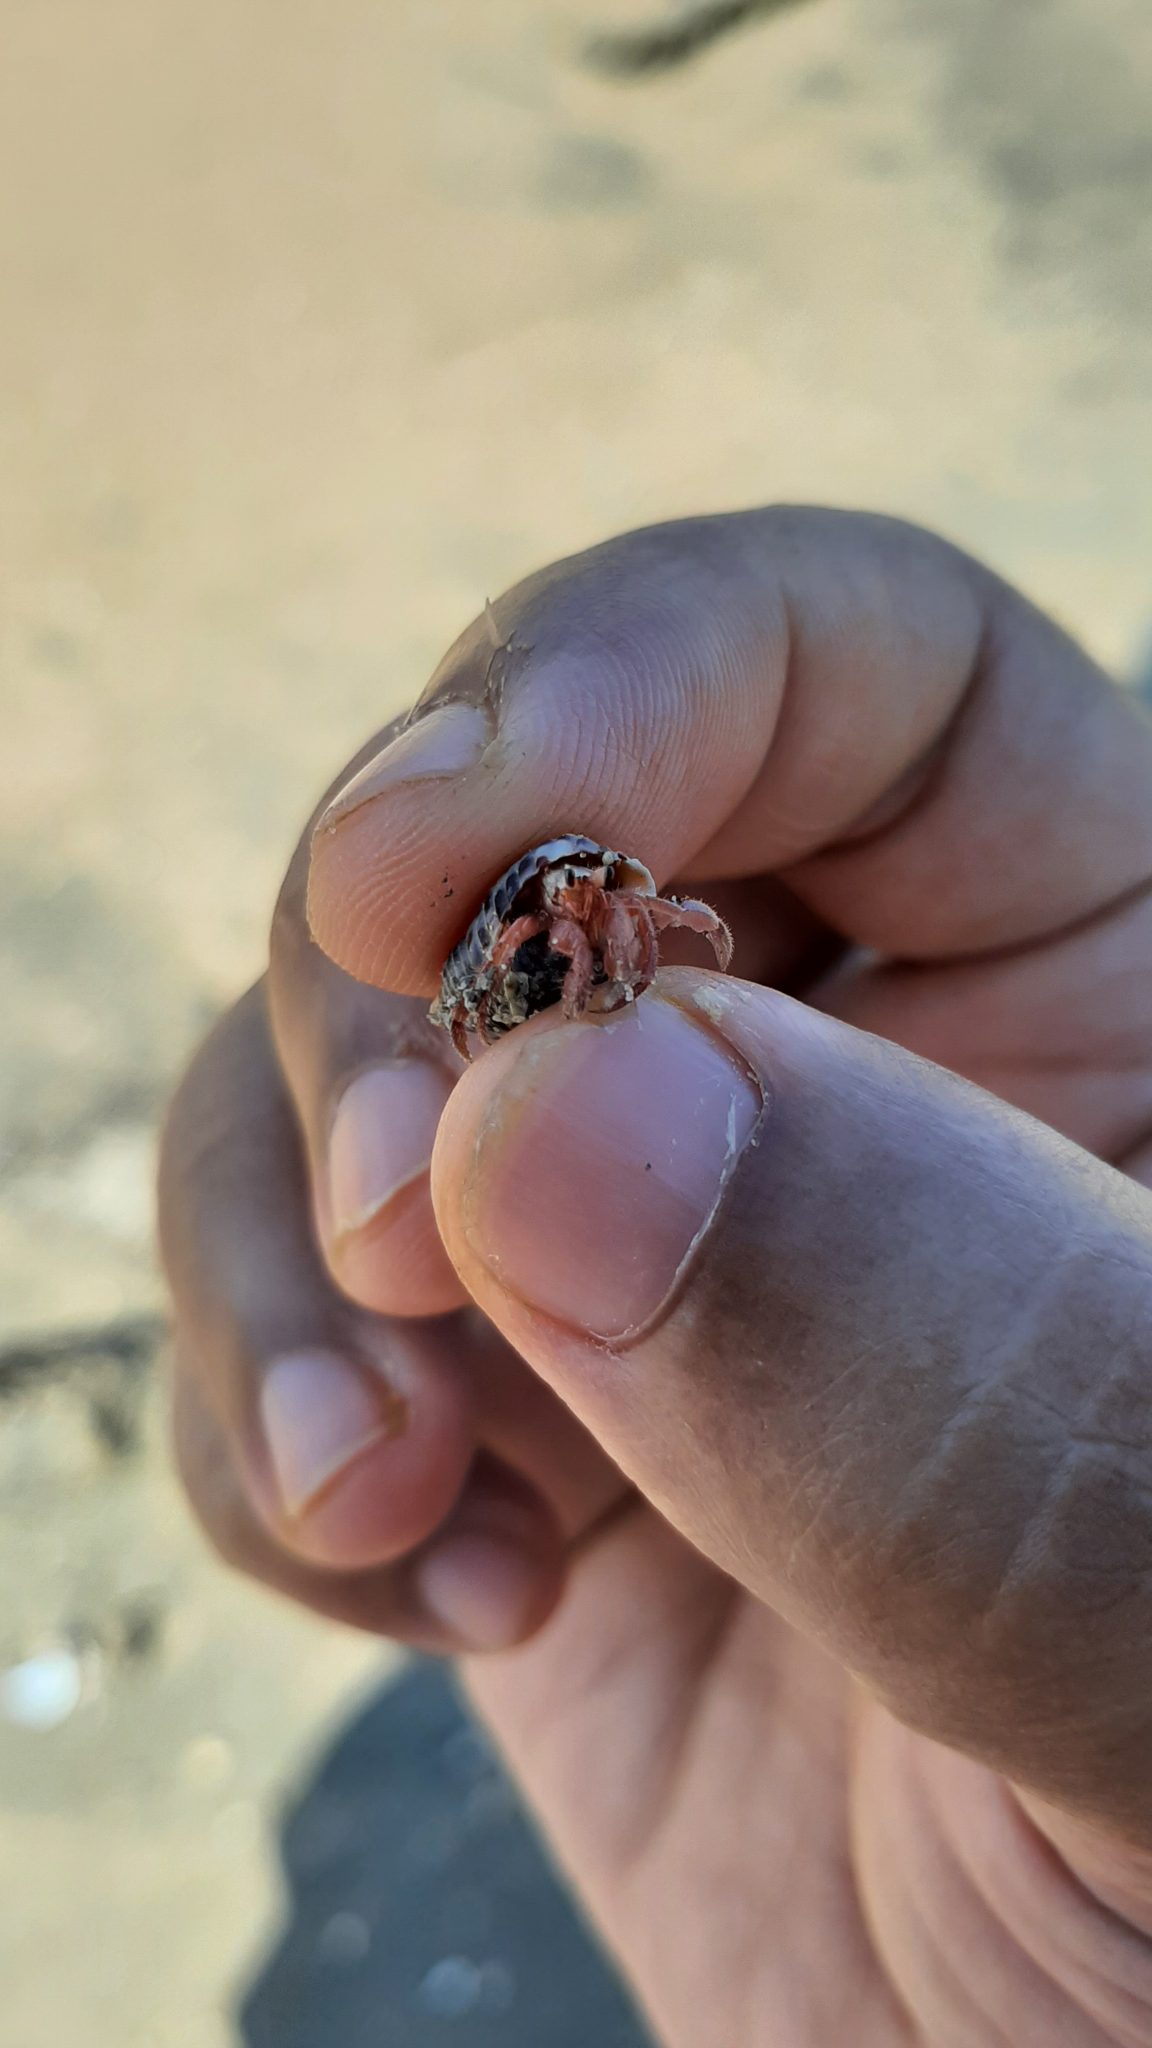 Tiny hermit crab, Chera Dwip, Saint Martine, Bangladesh